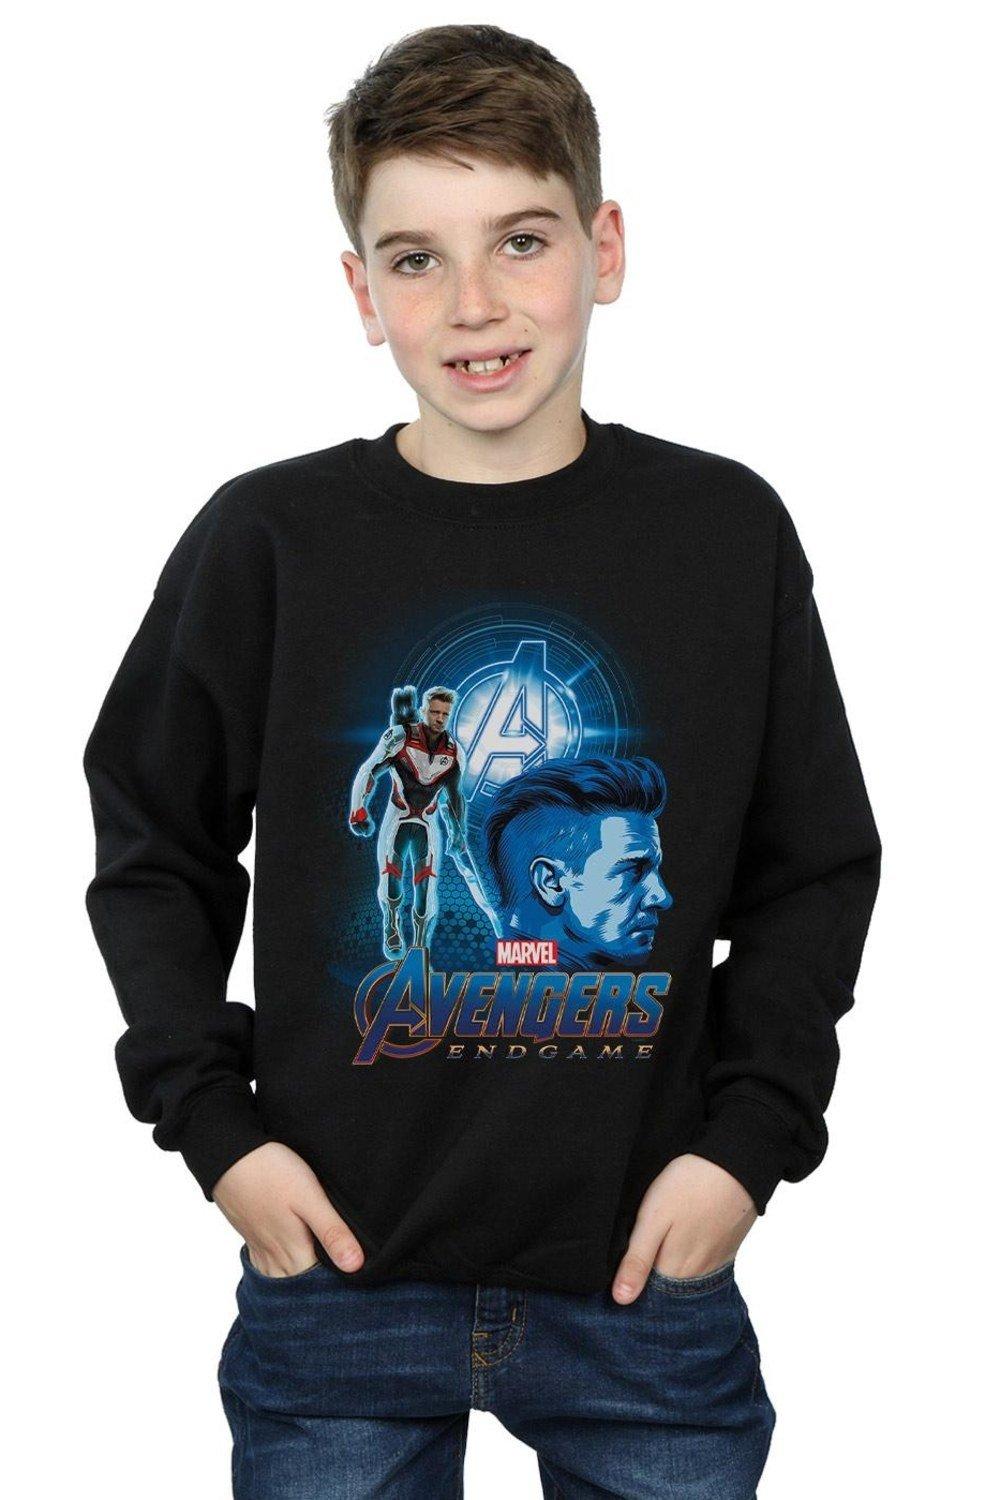 Avengers Endgame Hawkeye Team Suit Sweatshirt